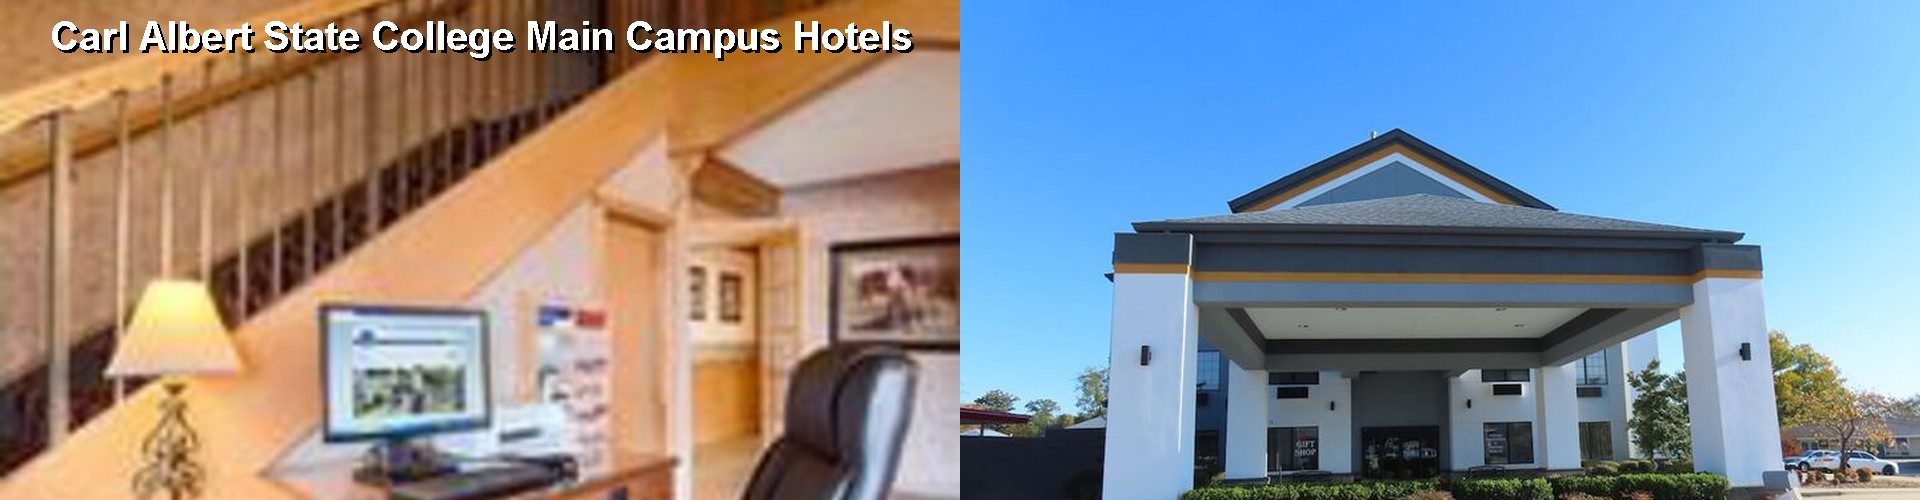 4 Best Hotels near Carl Albert State College Main Campus